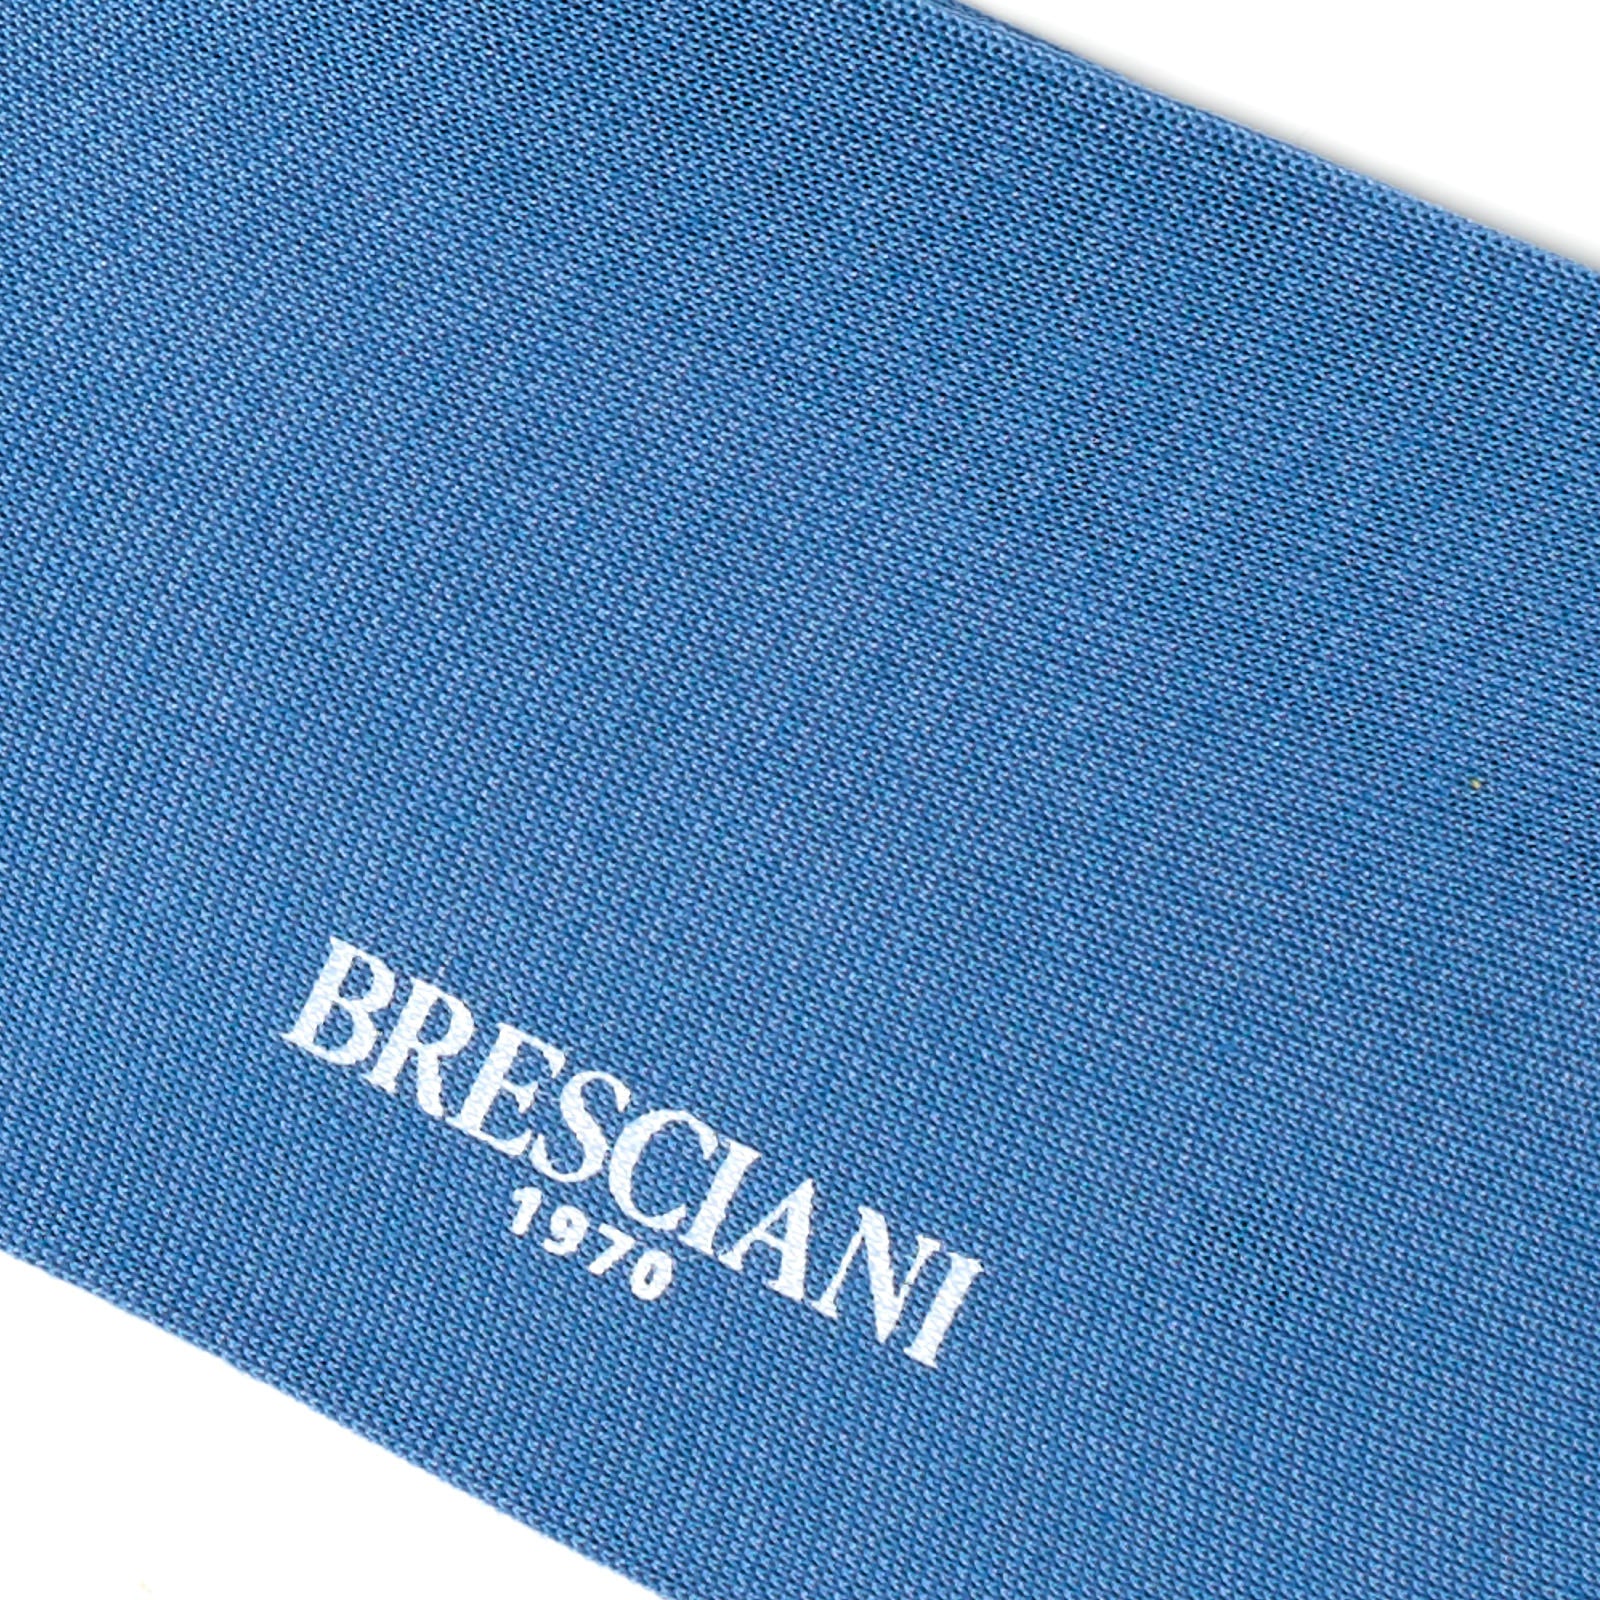 BRESCIANI Cotton Icon Art Mid Calf Length Socks US M-L BRESCIANI